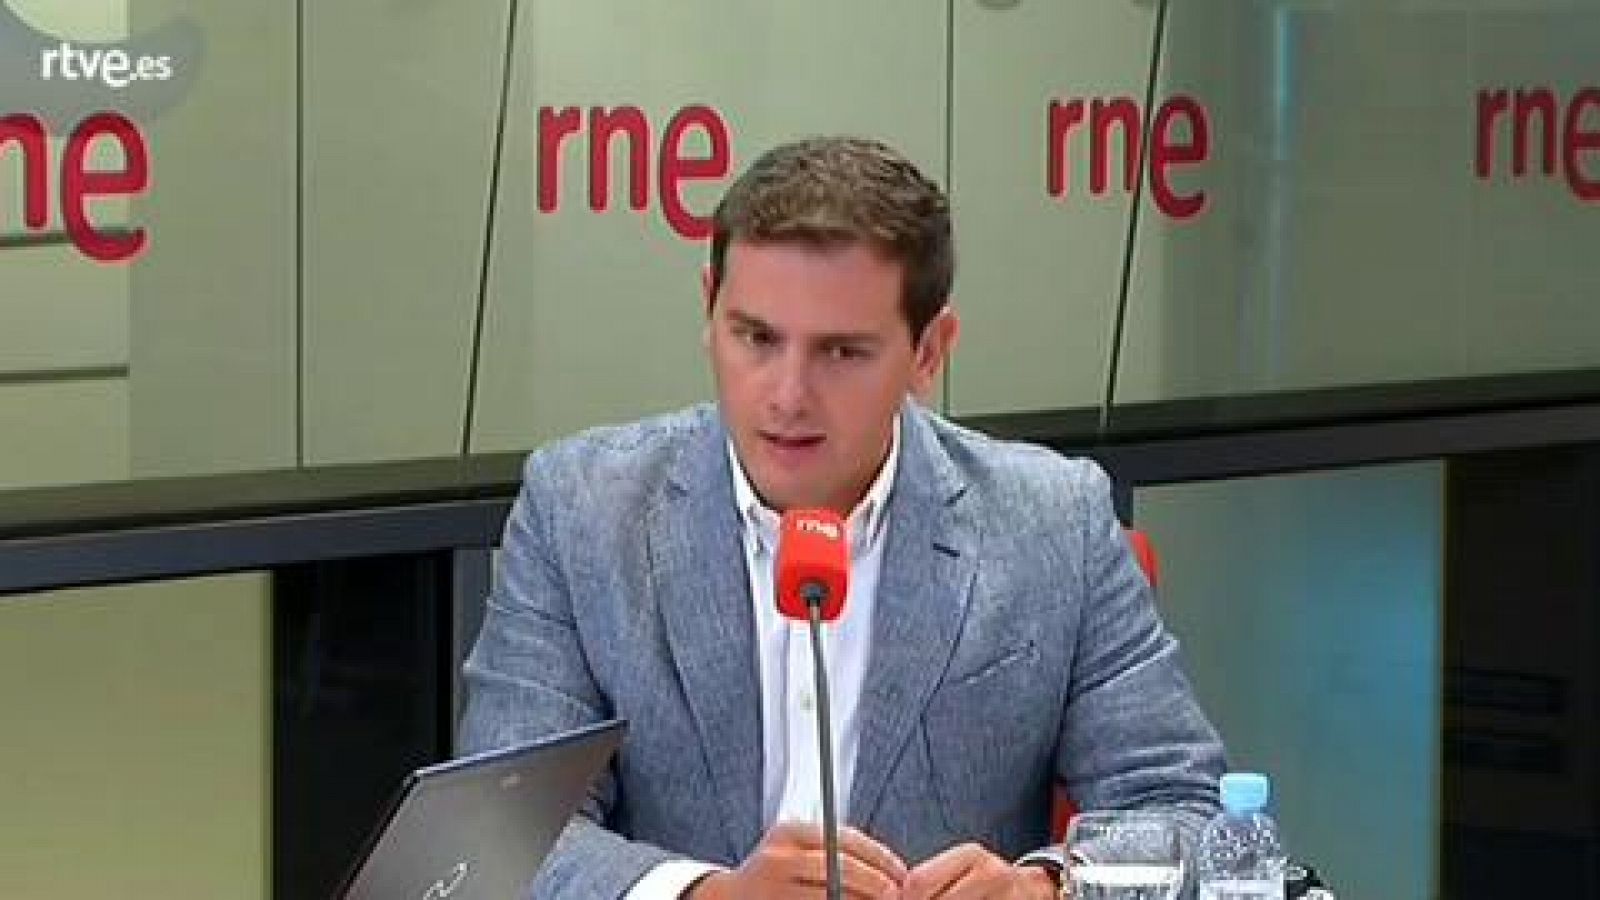 Las mañanas de RNE - Albert Rivera: "Elecciones cuanto antes mejor, Sánchez está metido en un callejón sin salida" - Ver ahora